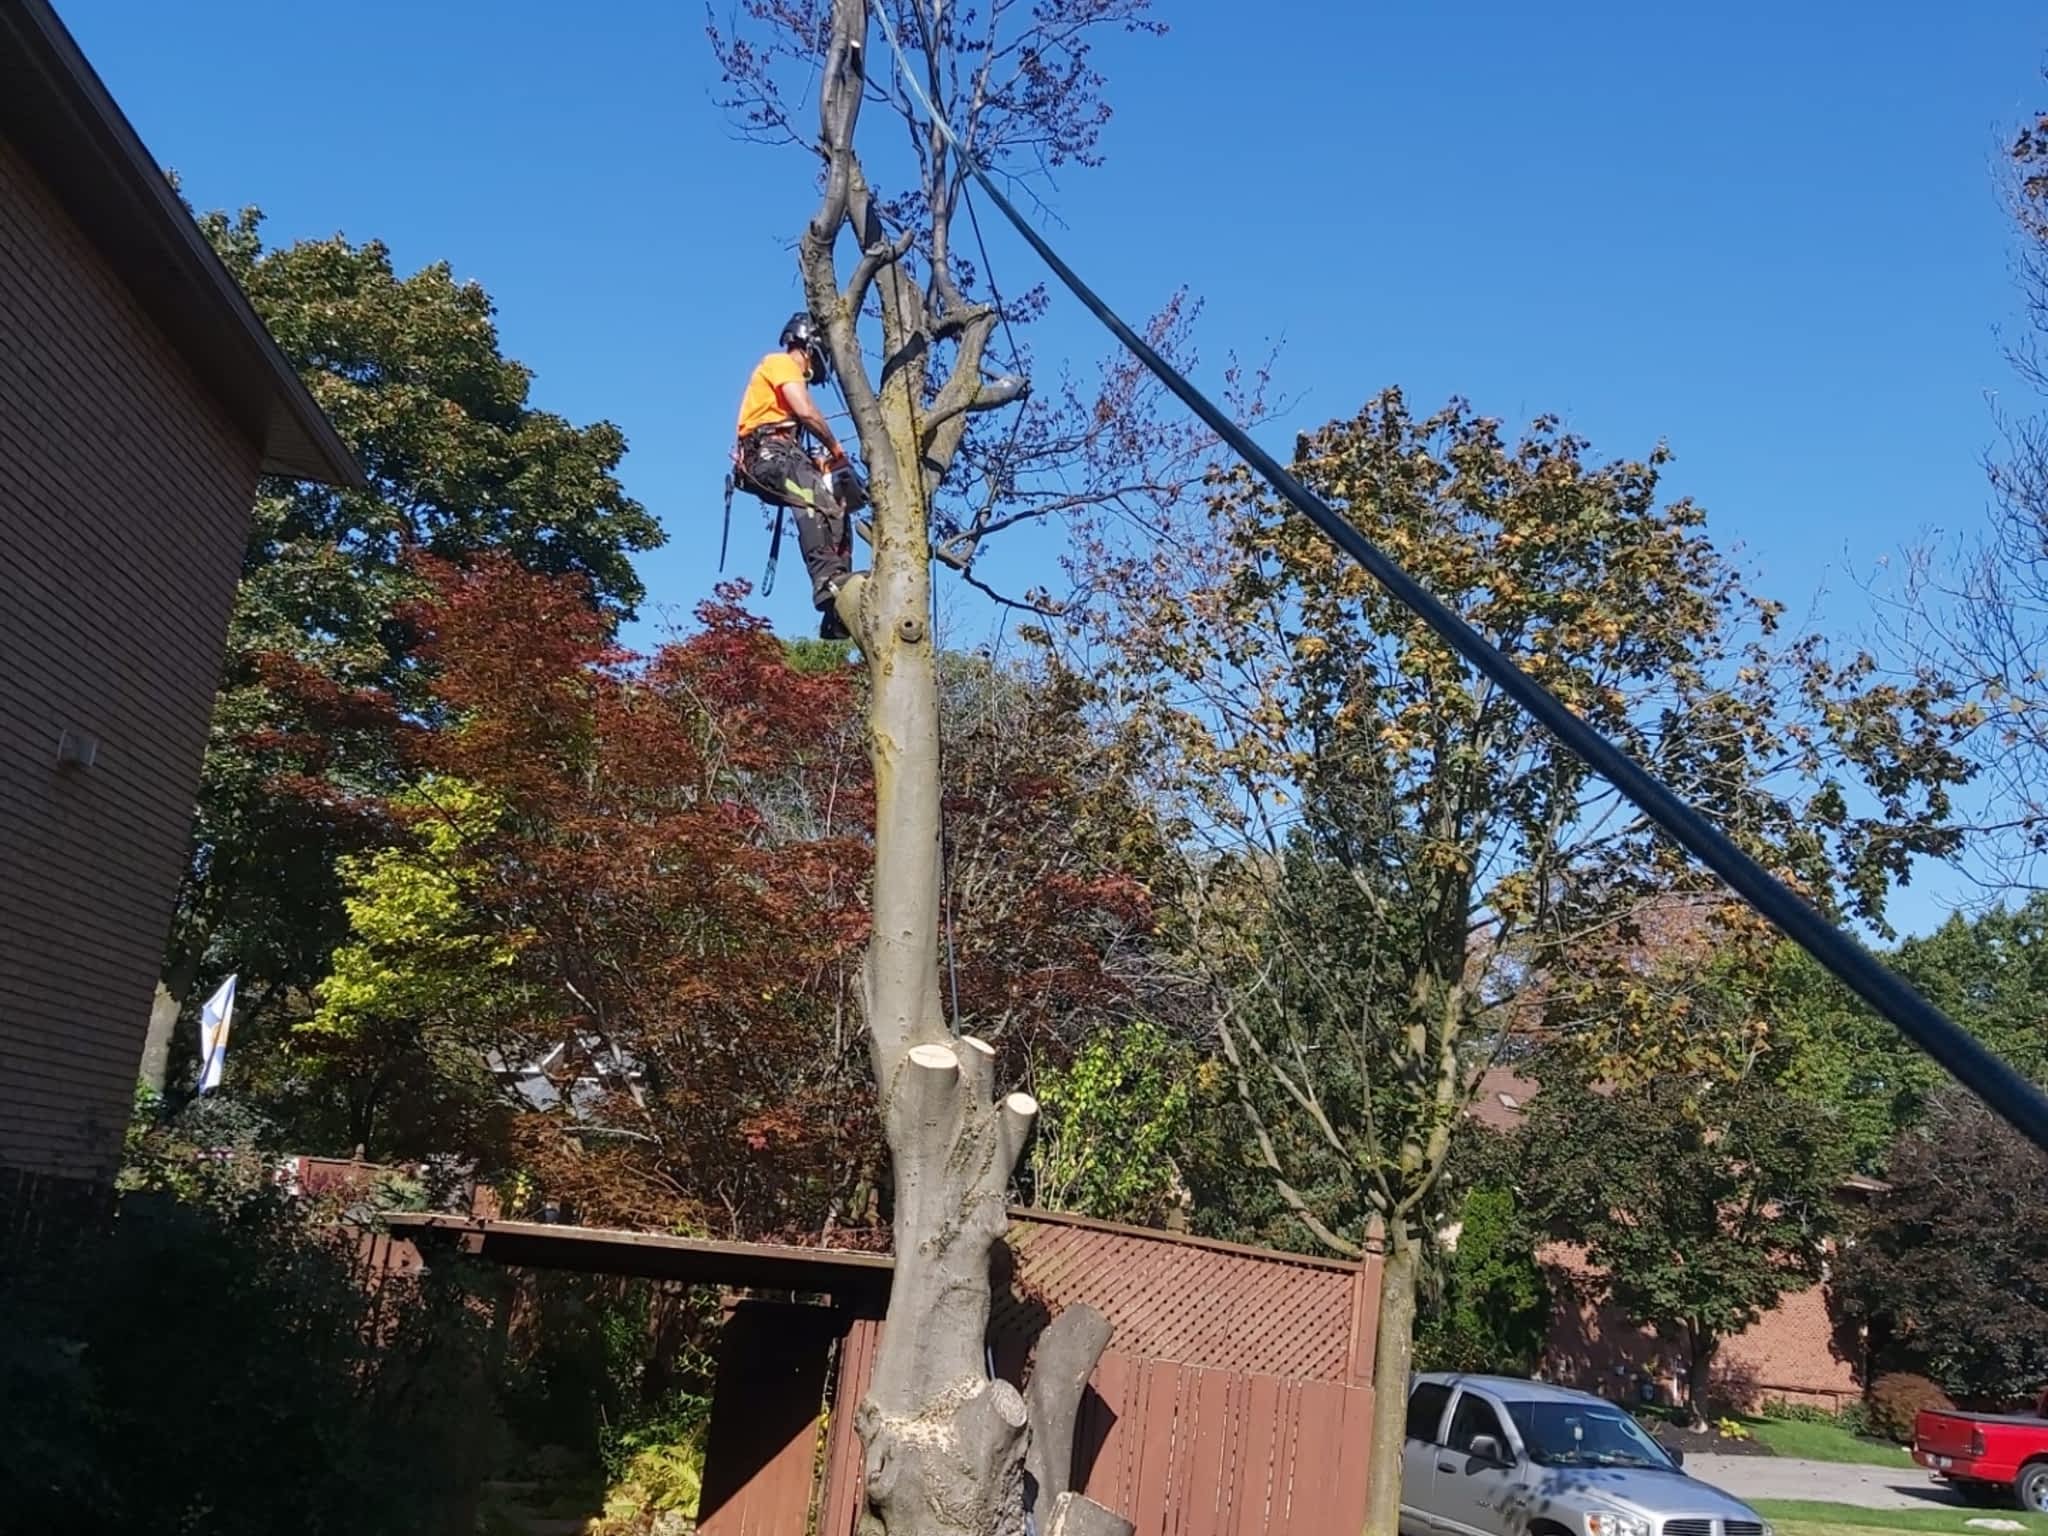 photo Cody's Tree Service